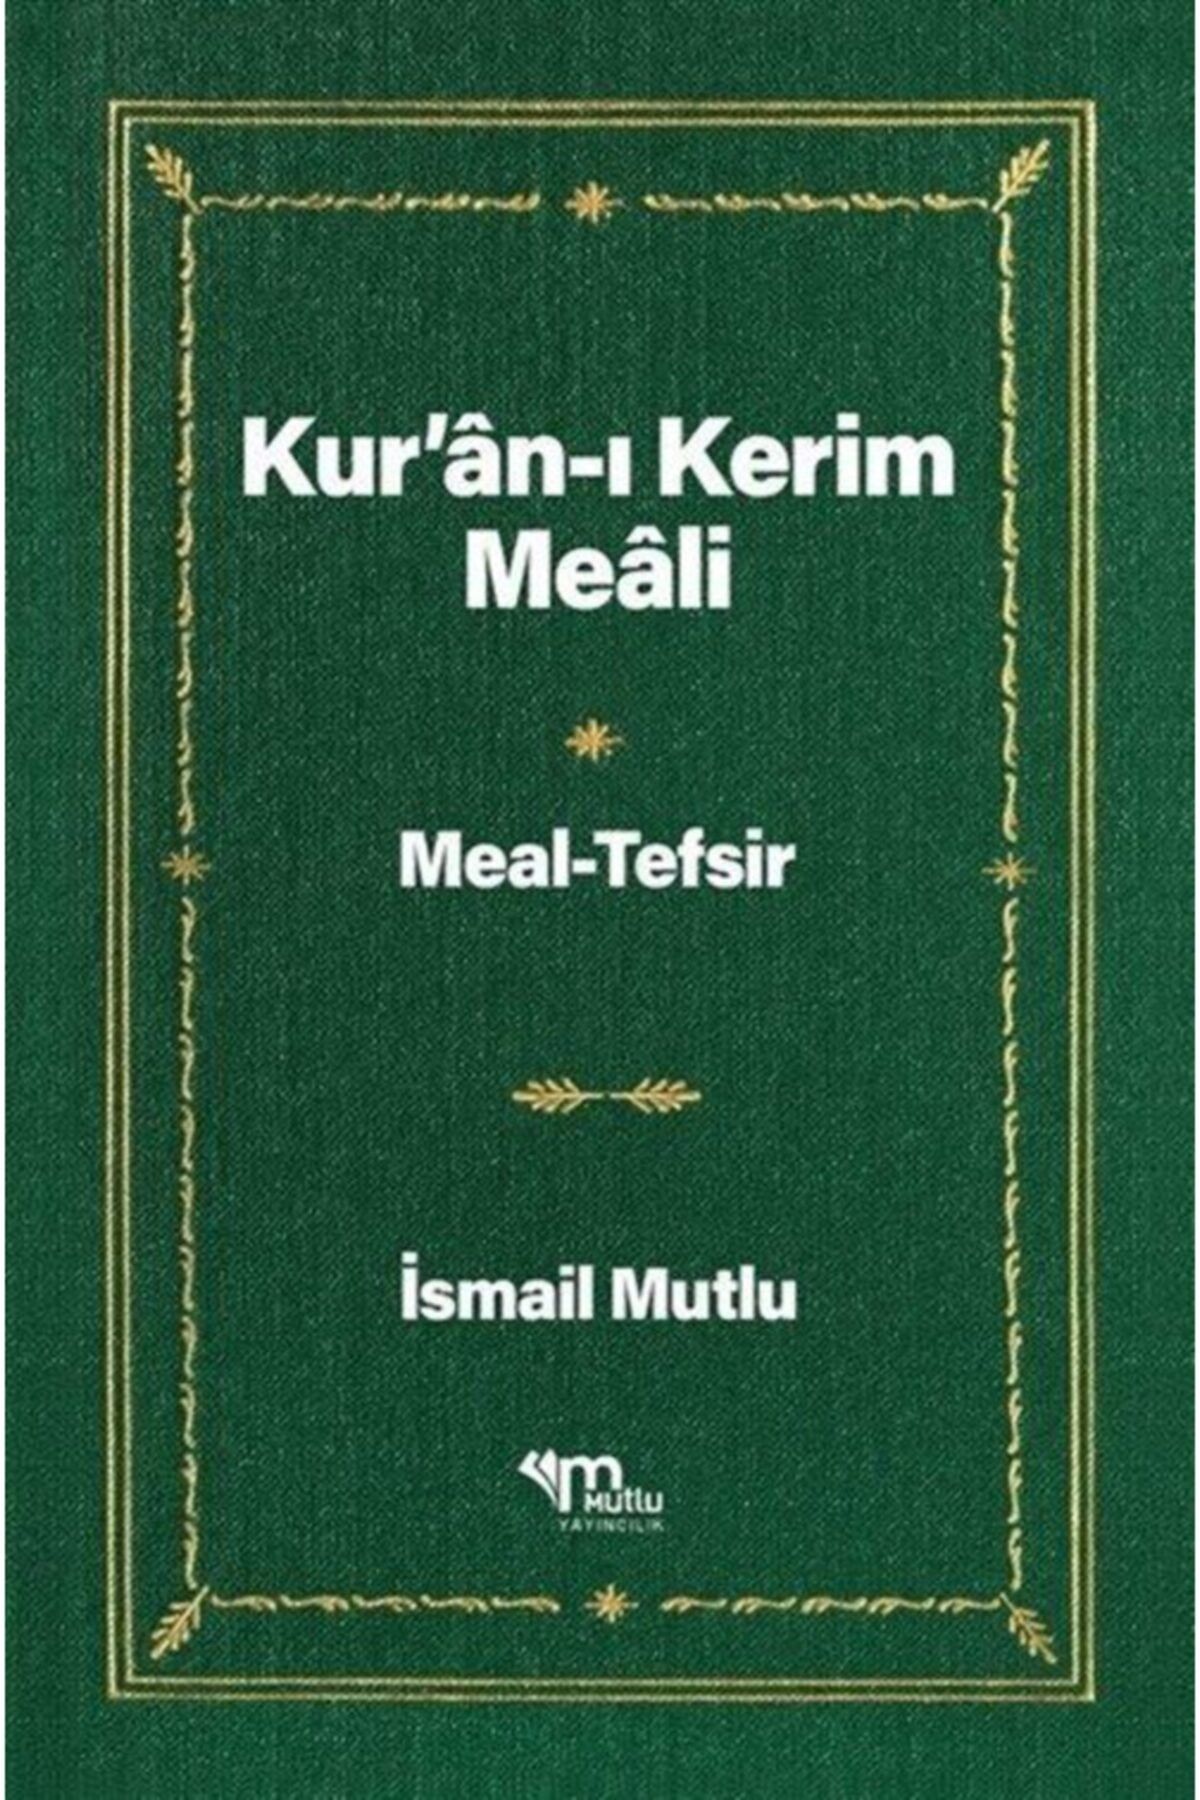 Mutlu Yayıncılık Kur'an-ı Kerim Meali Meal-tefsir (1.2.)